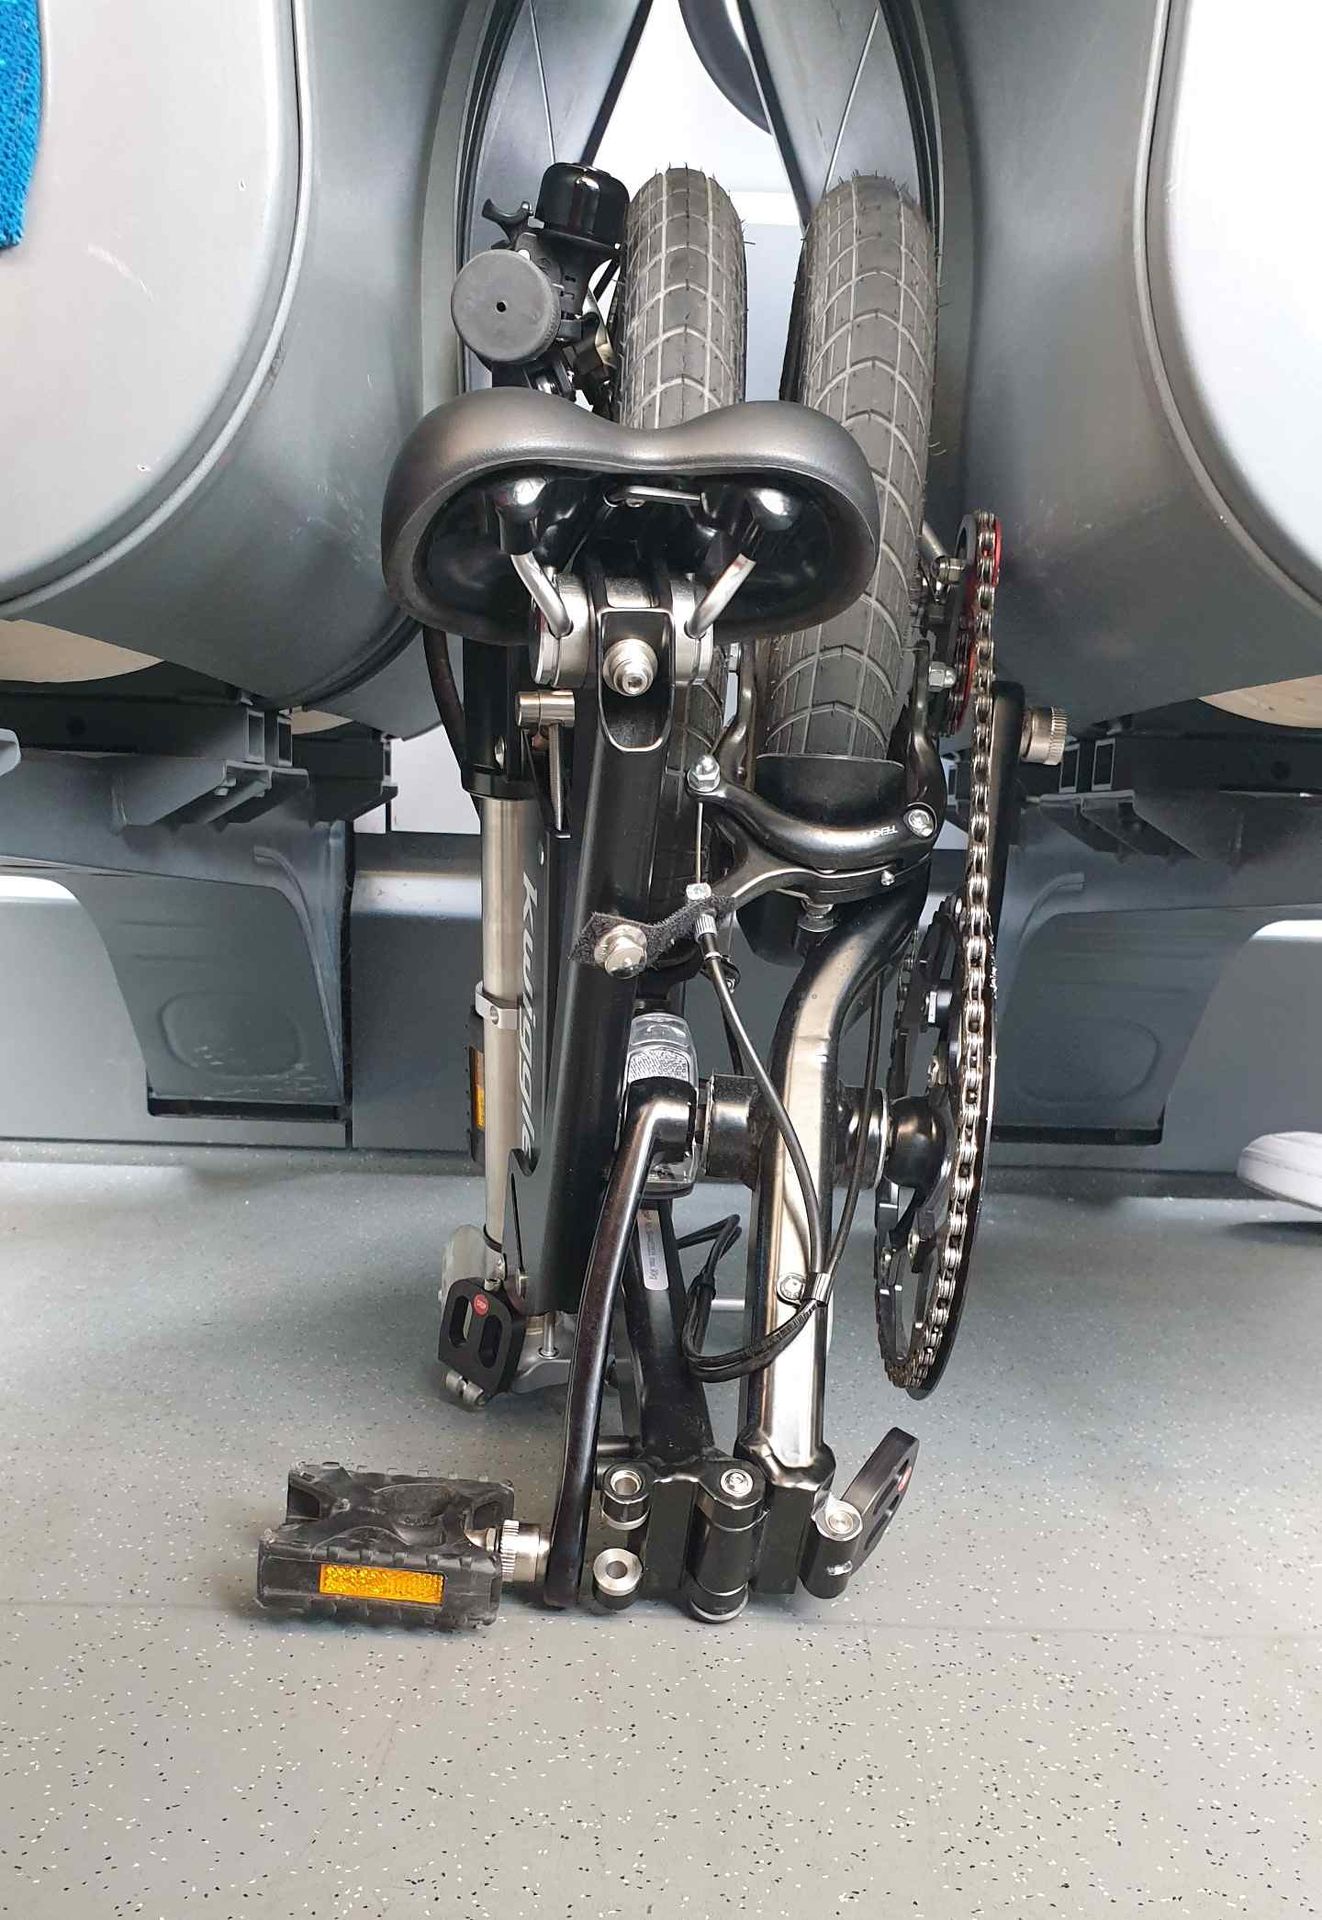 Folding-bike-Kwiggle-between-seats-in-the-train